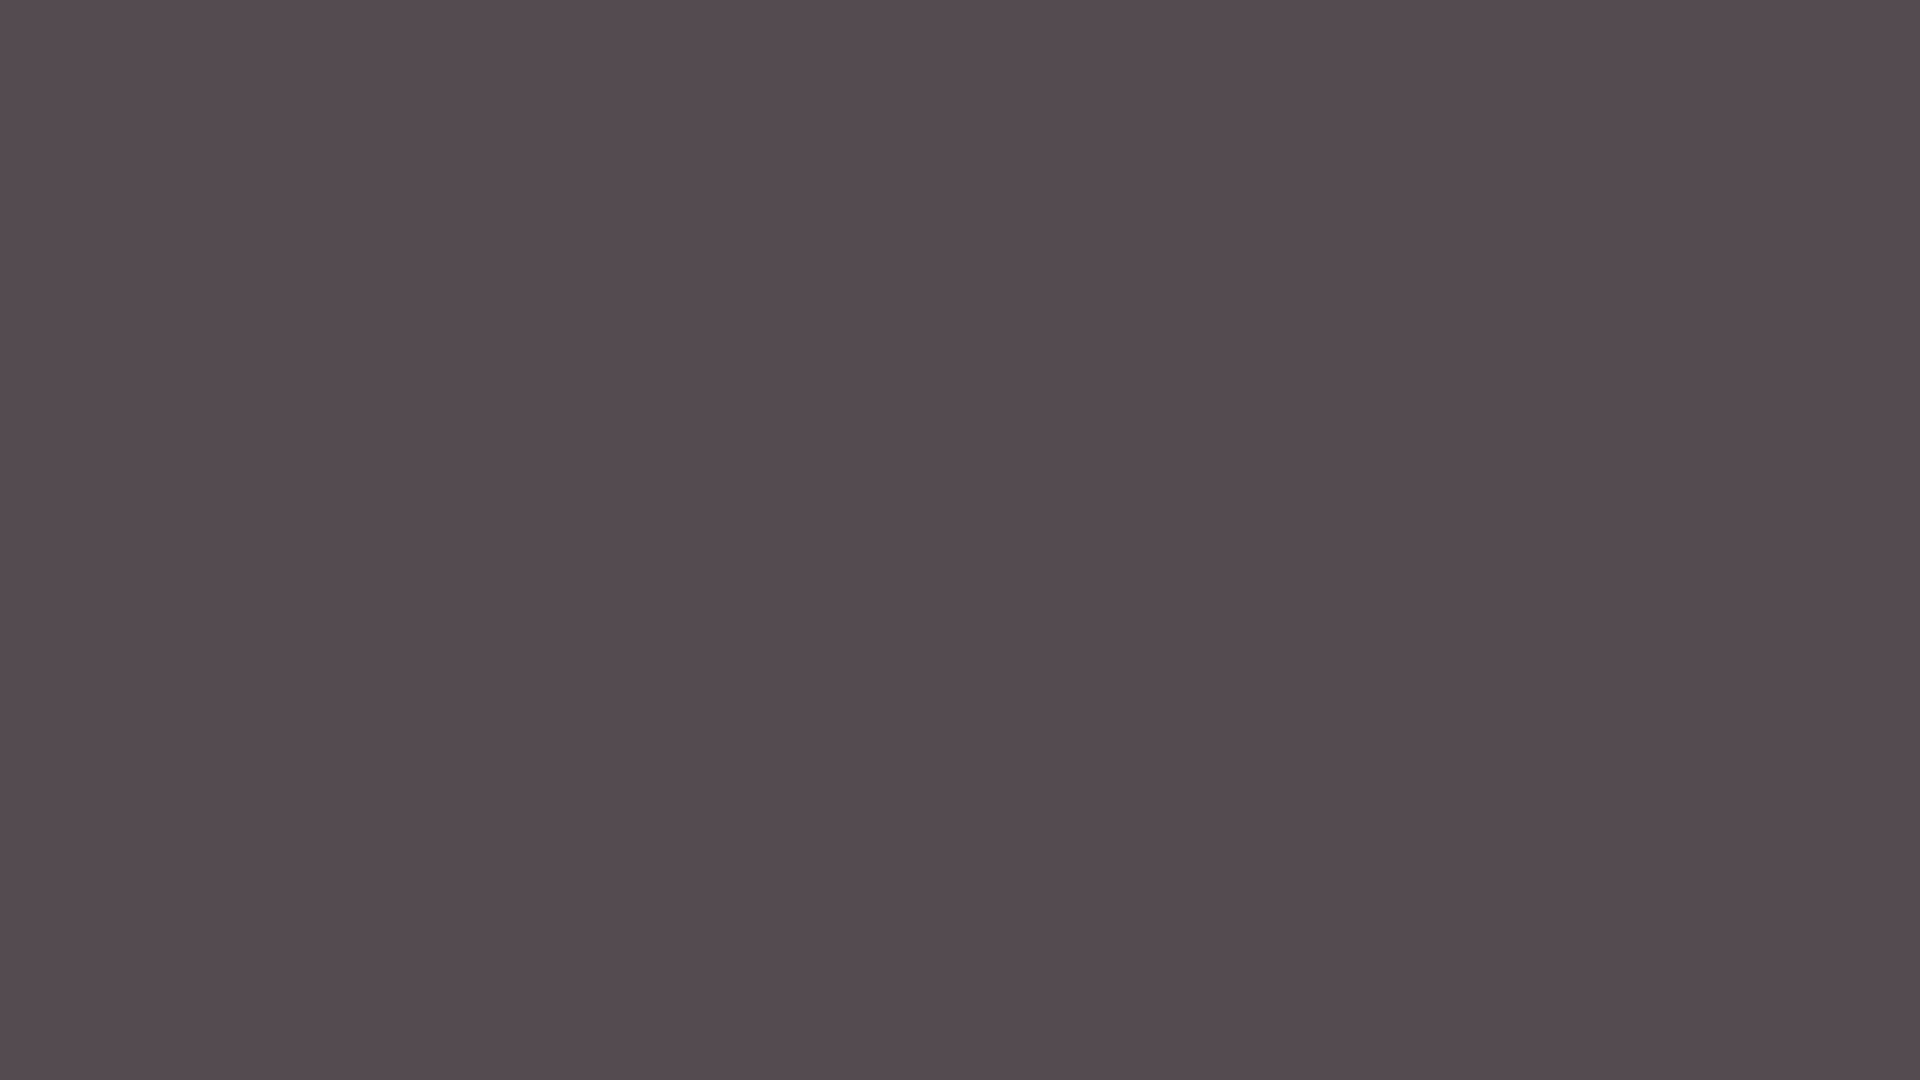 1920x1080 Dark Liver Solid Color Background